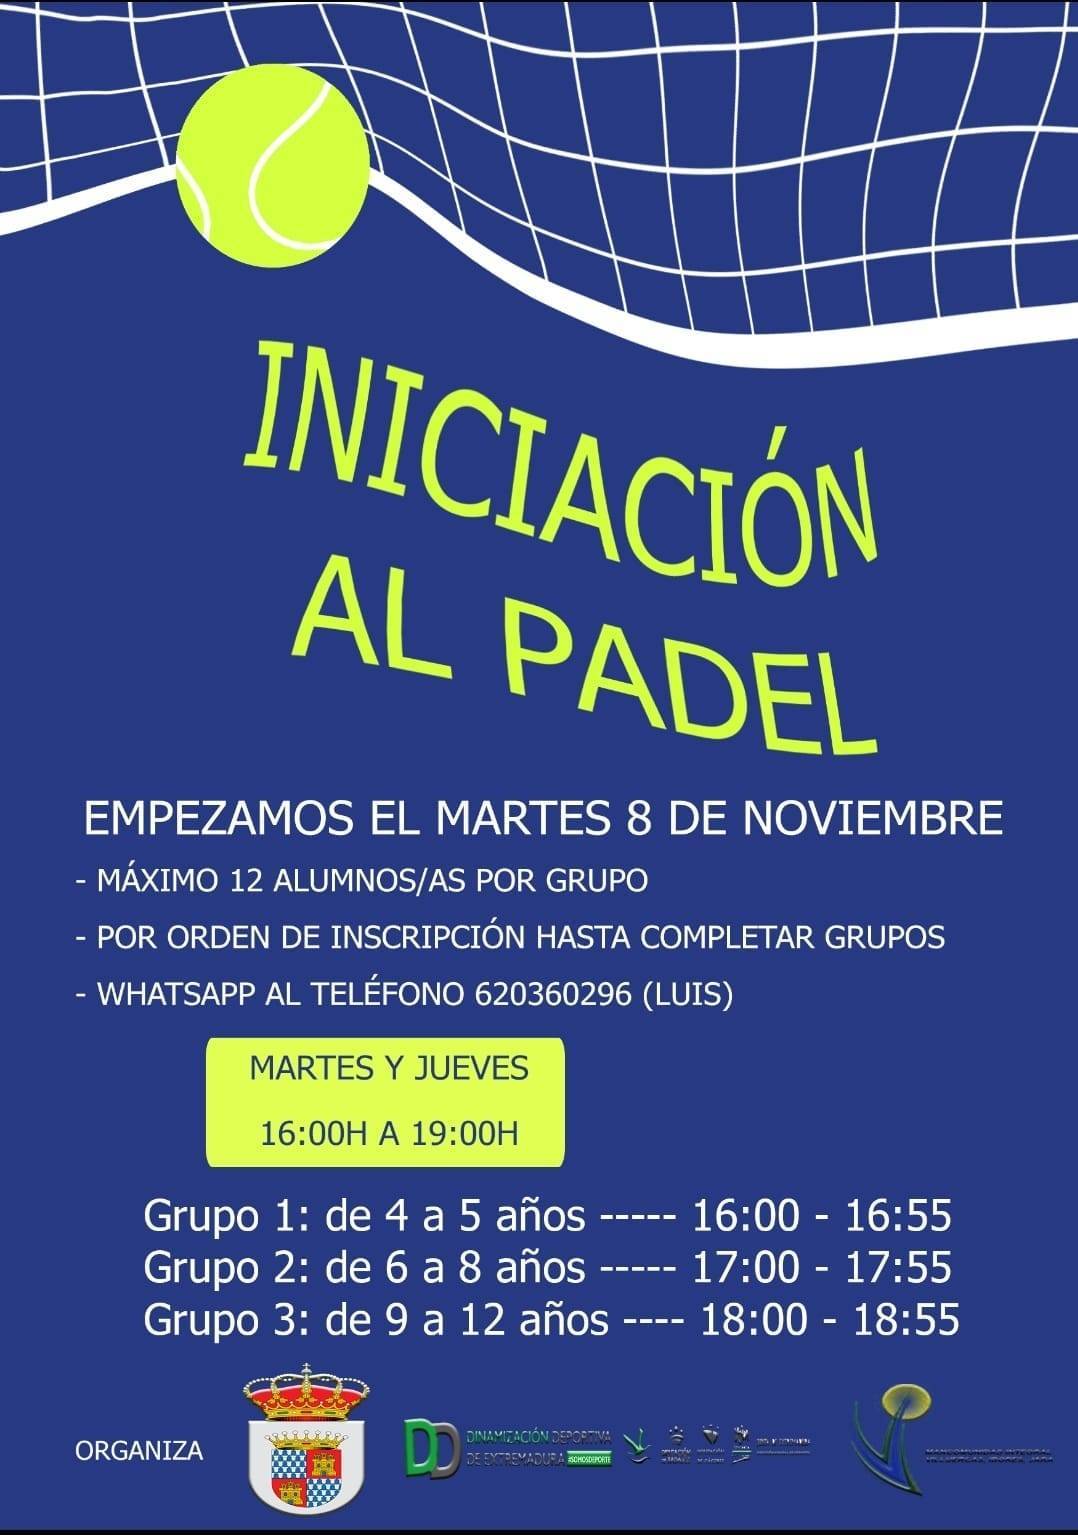 Iniciación al pádel (2022) - Deleitosa (Cáceres)